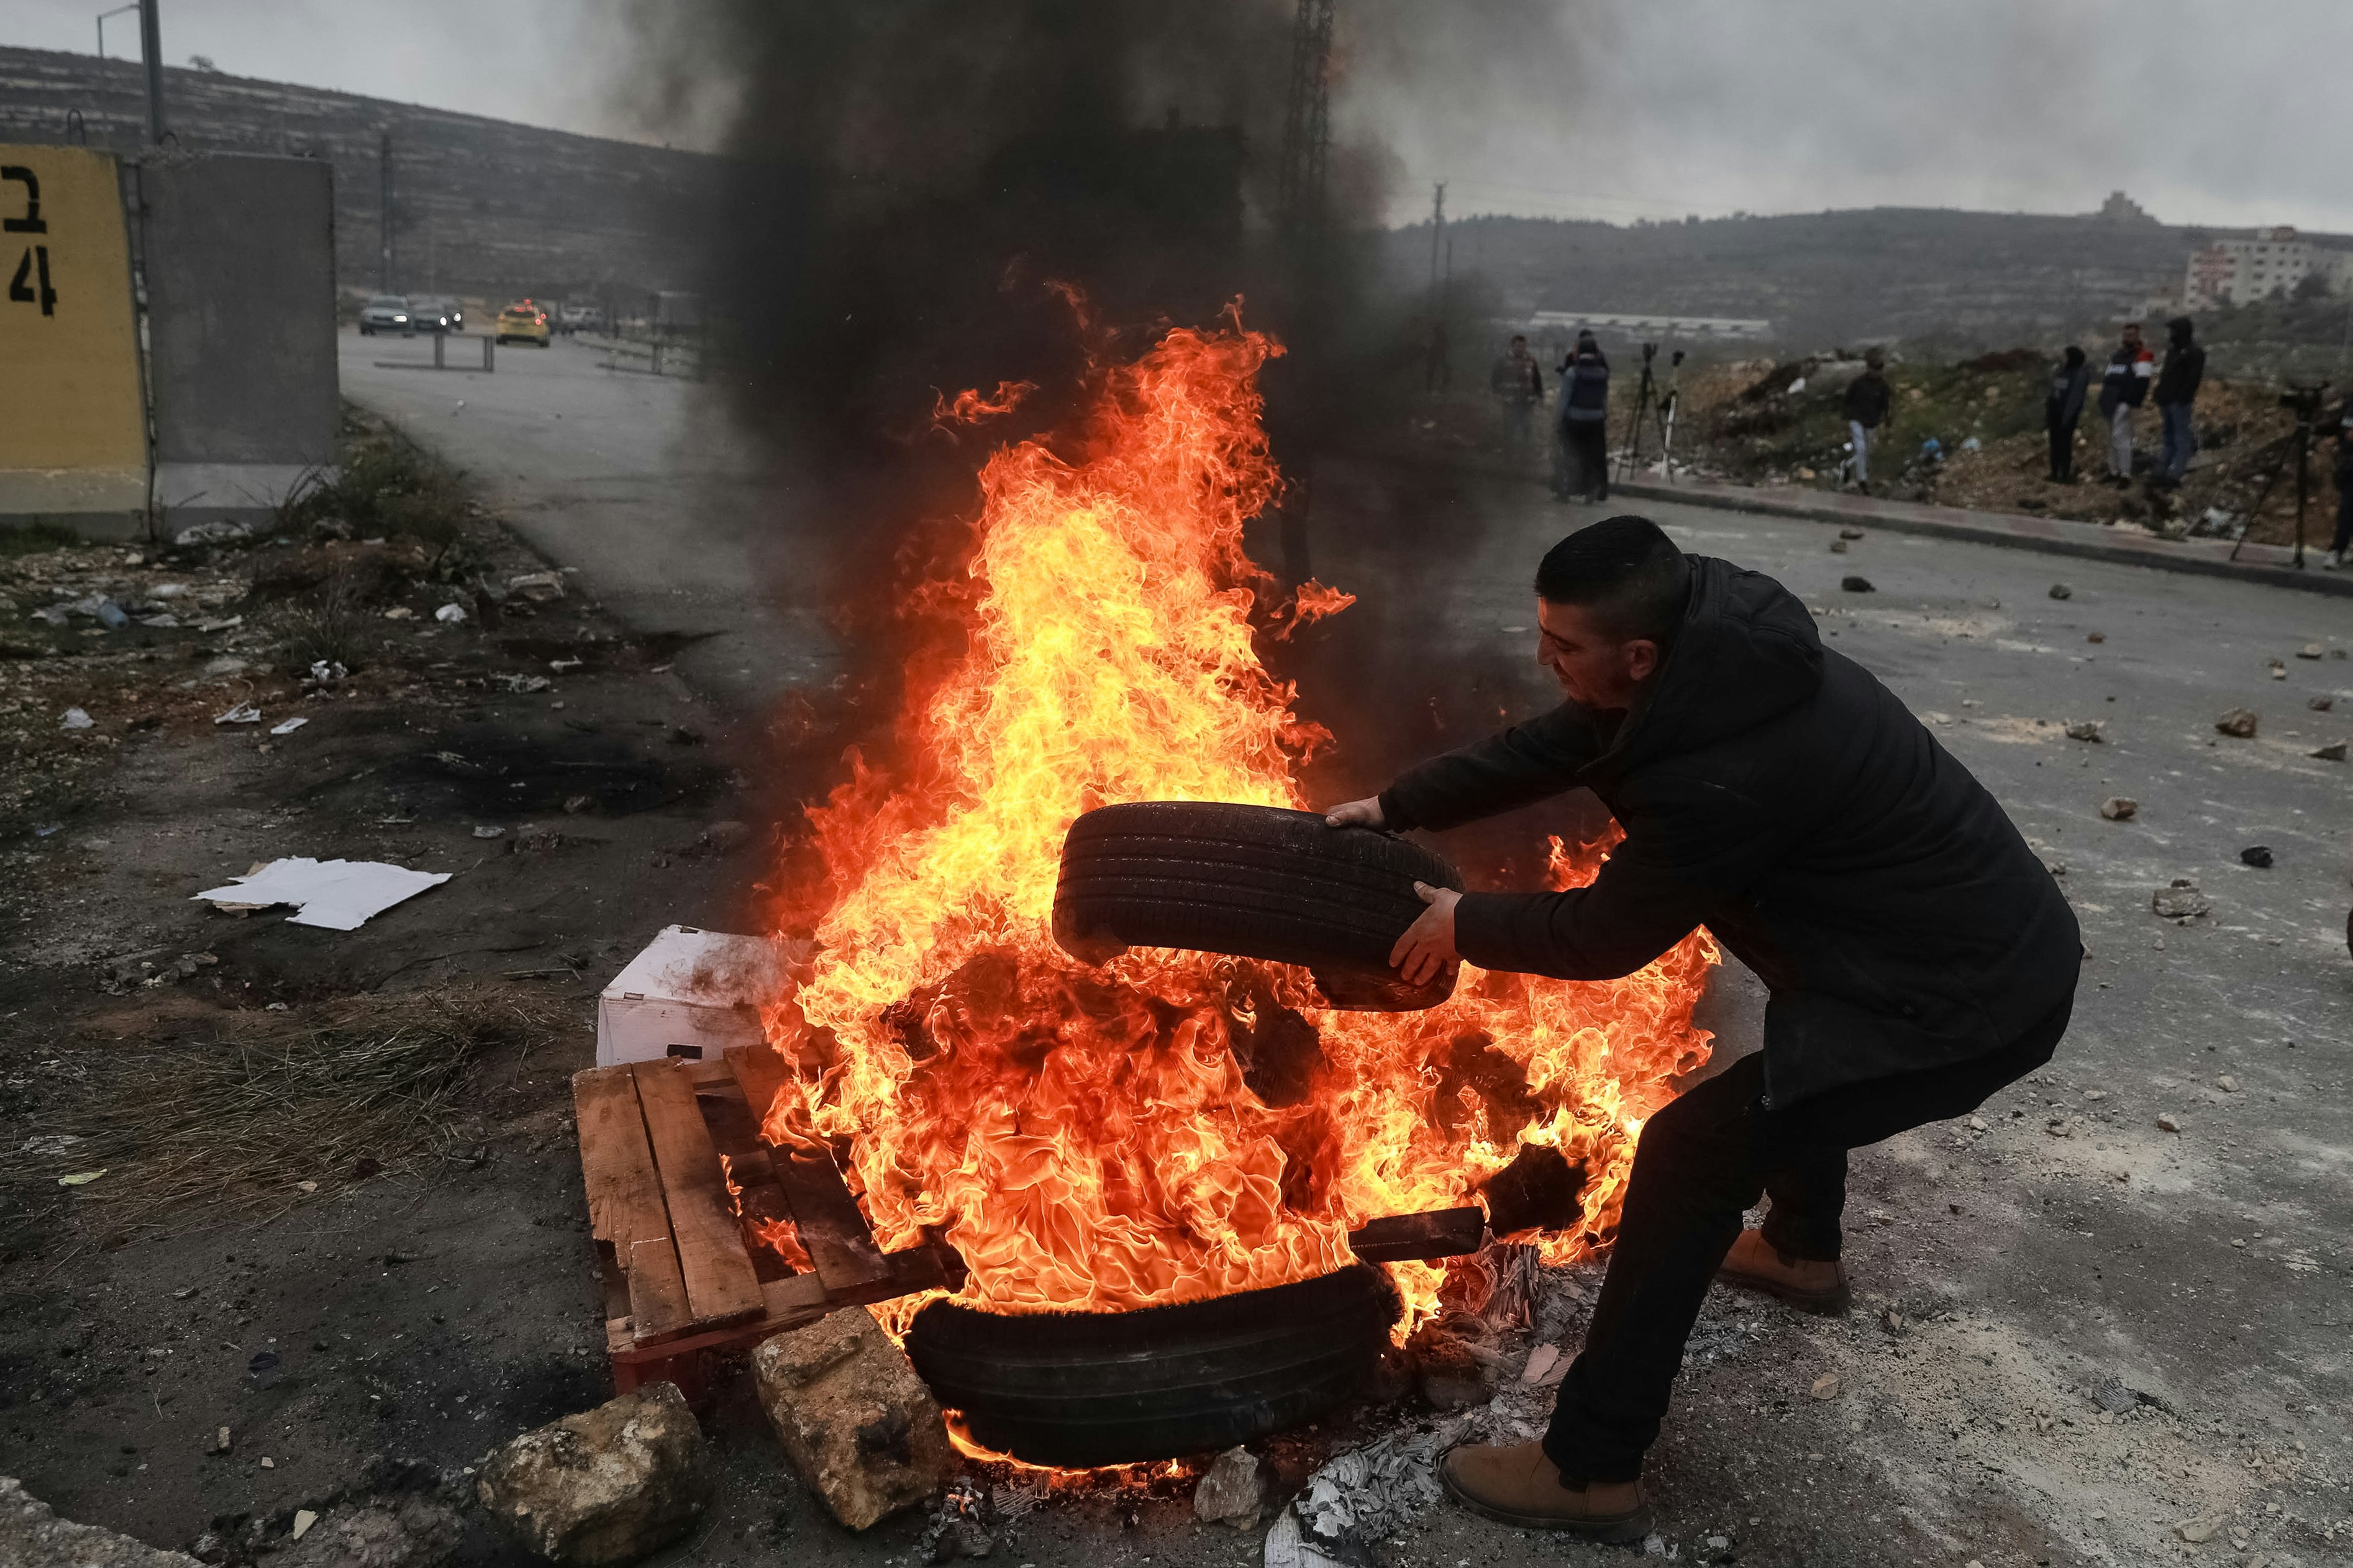 RAMALLAH, CISJORDANIE - 09 FÉVRIER : Un groupe de Palestiniens brûlent des pneus lors d'une manifestation pour montrer la mort de trois Palestiniens nommés Ashraf Mubaslat, Adham Mabrouka et Mohammad Dakhil tués à la suite de tirs des forces israéliennes sur leur véhicule à Naplouse, en février 09/09/2022 à Ramallah, Cisjordanie.  (Photo par Issam Rimawi/Agence Anadolu via Getty Images)